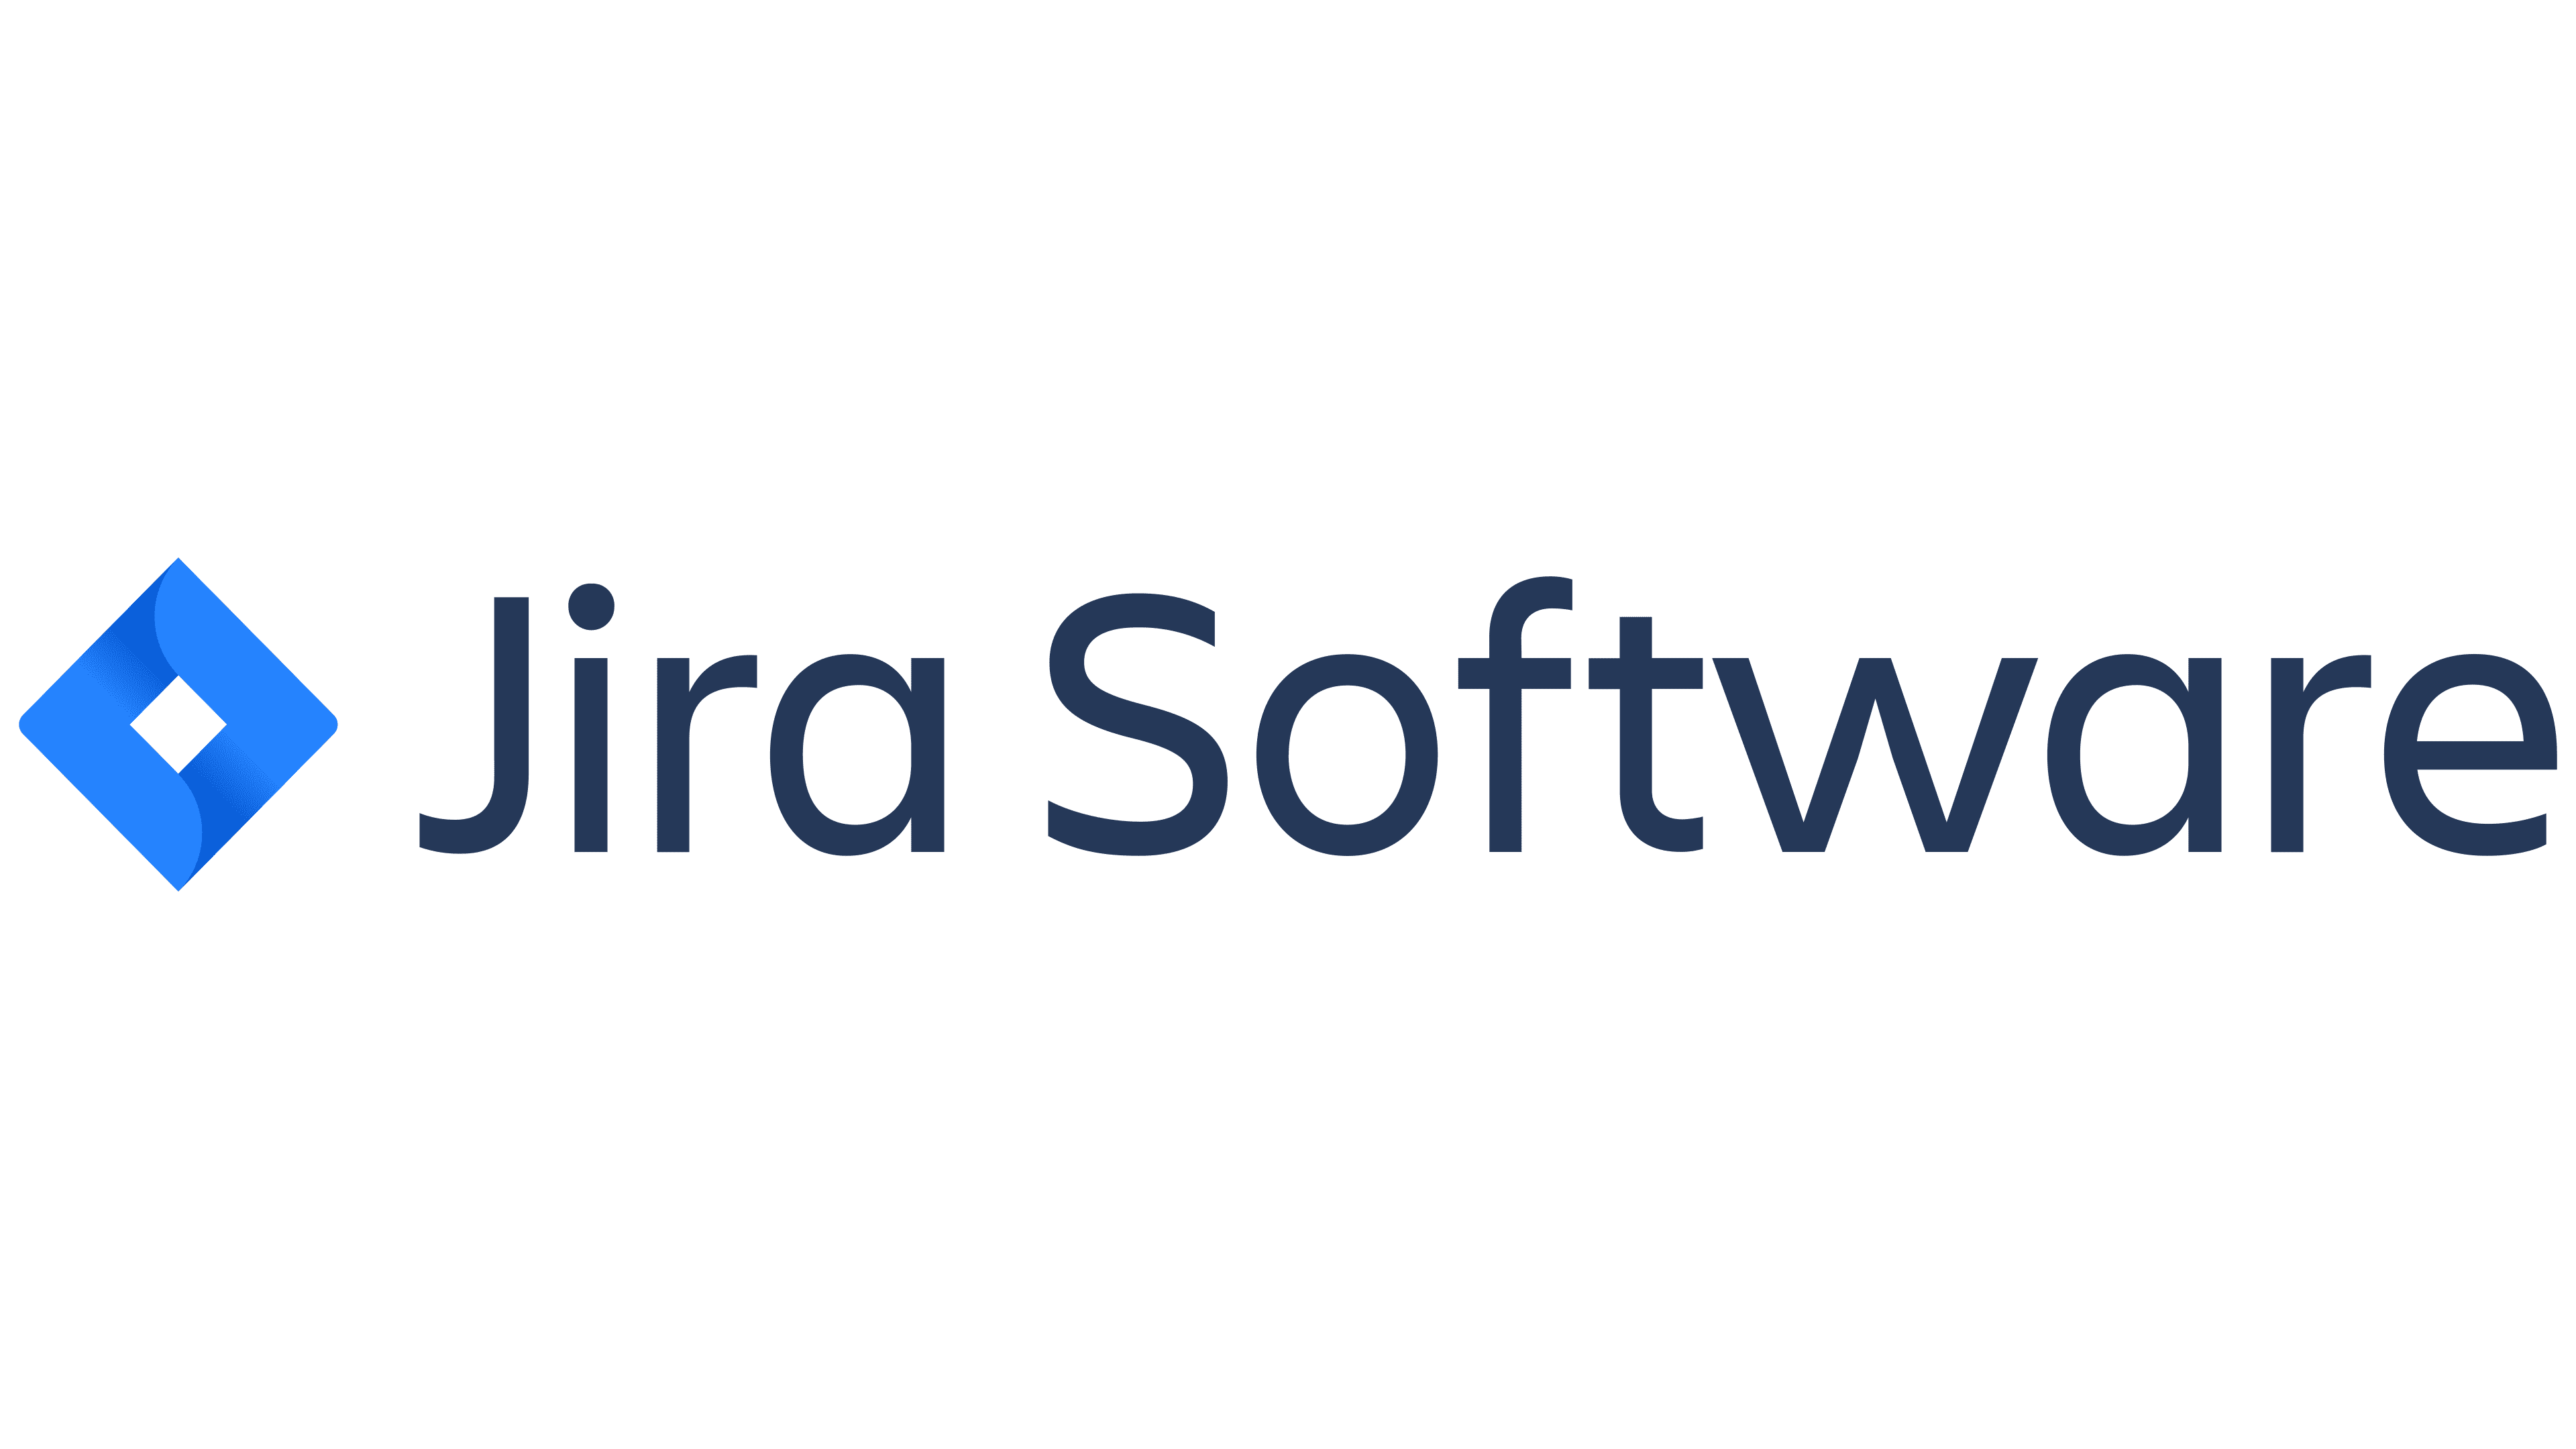 Jira Software (Cloud)